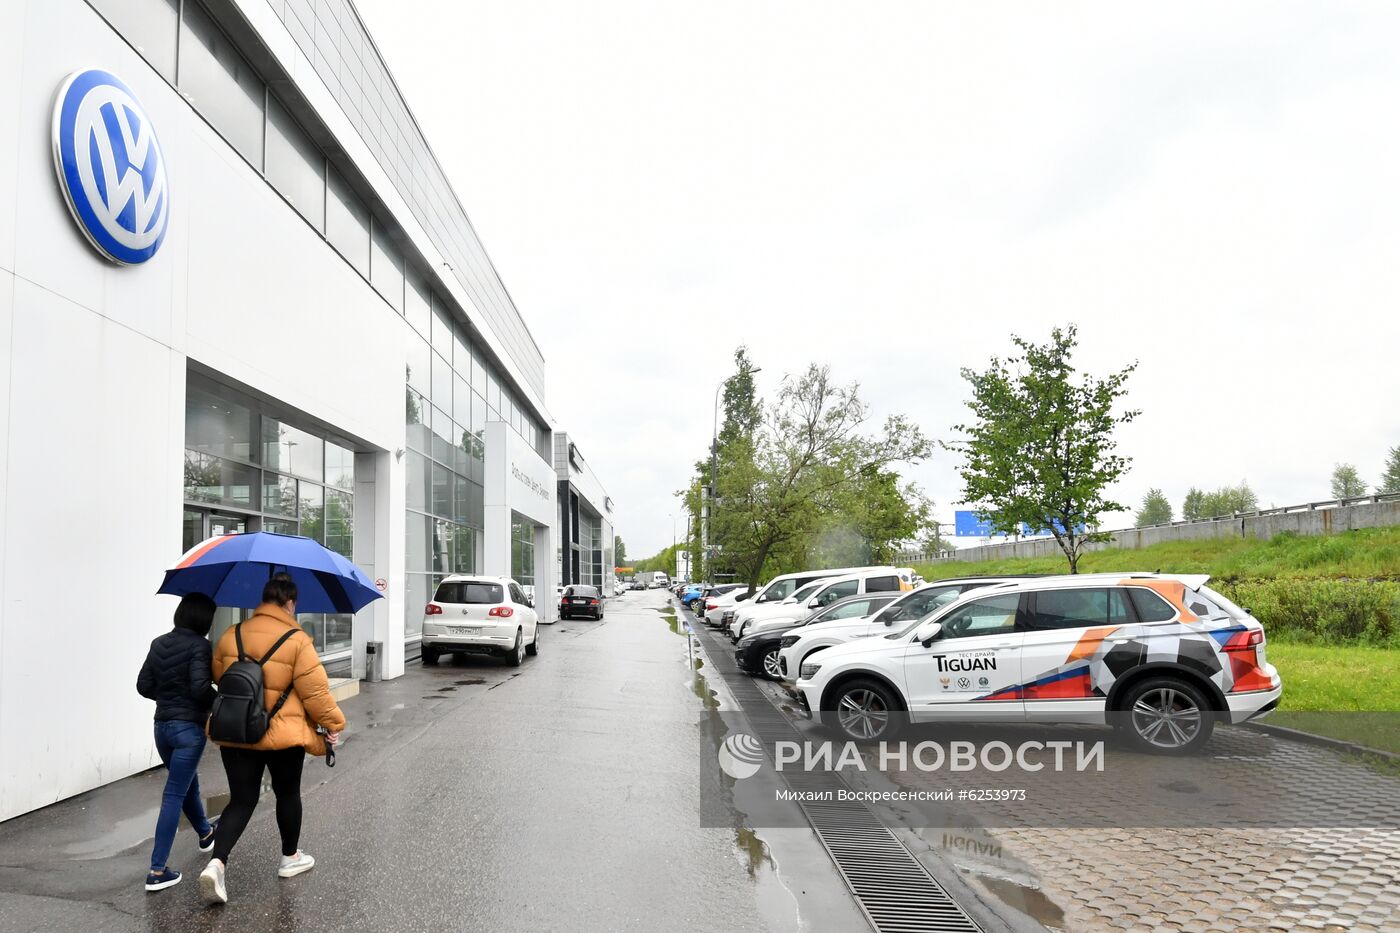 Открытие автомобильных салонов после карантина в Москве